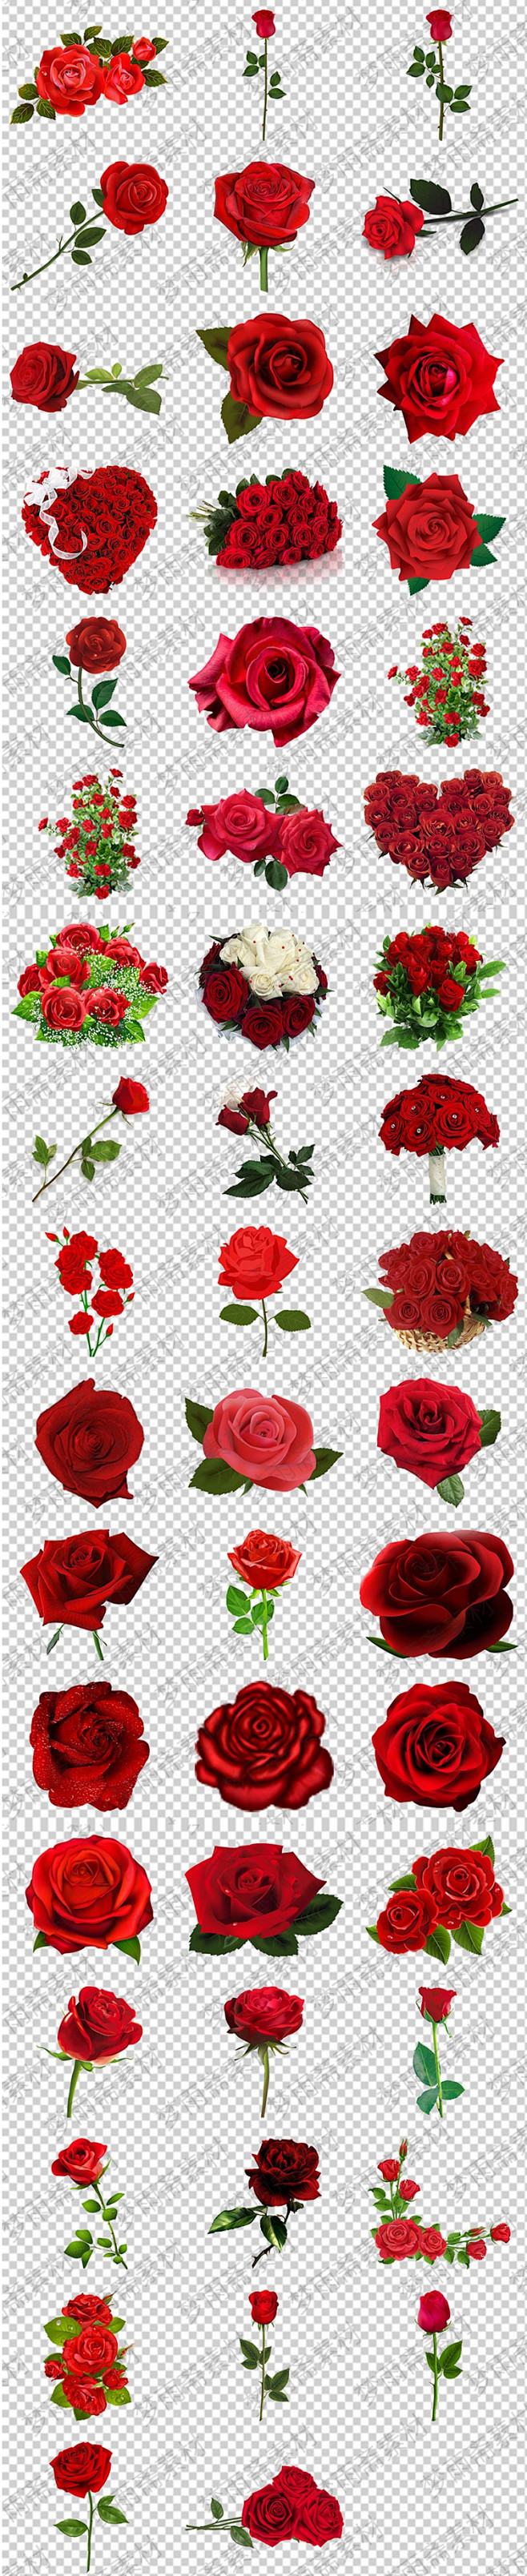 浪漫爱情红色玫瑰花红玫瑰png格式透明底...